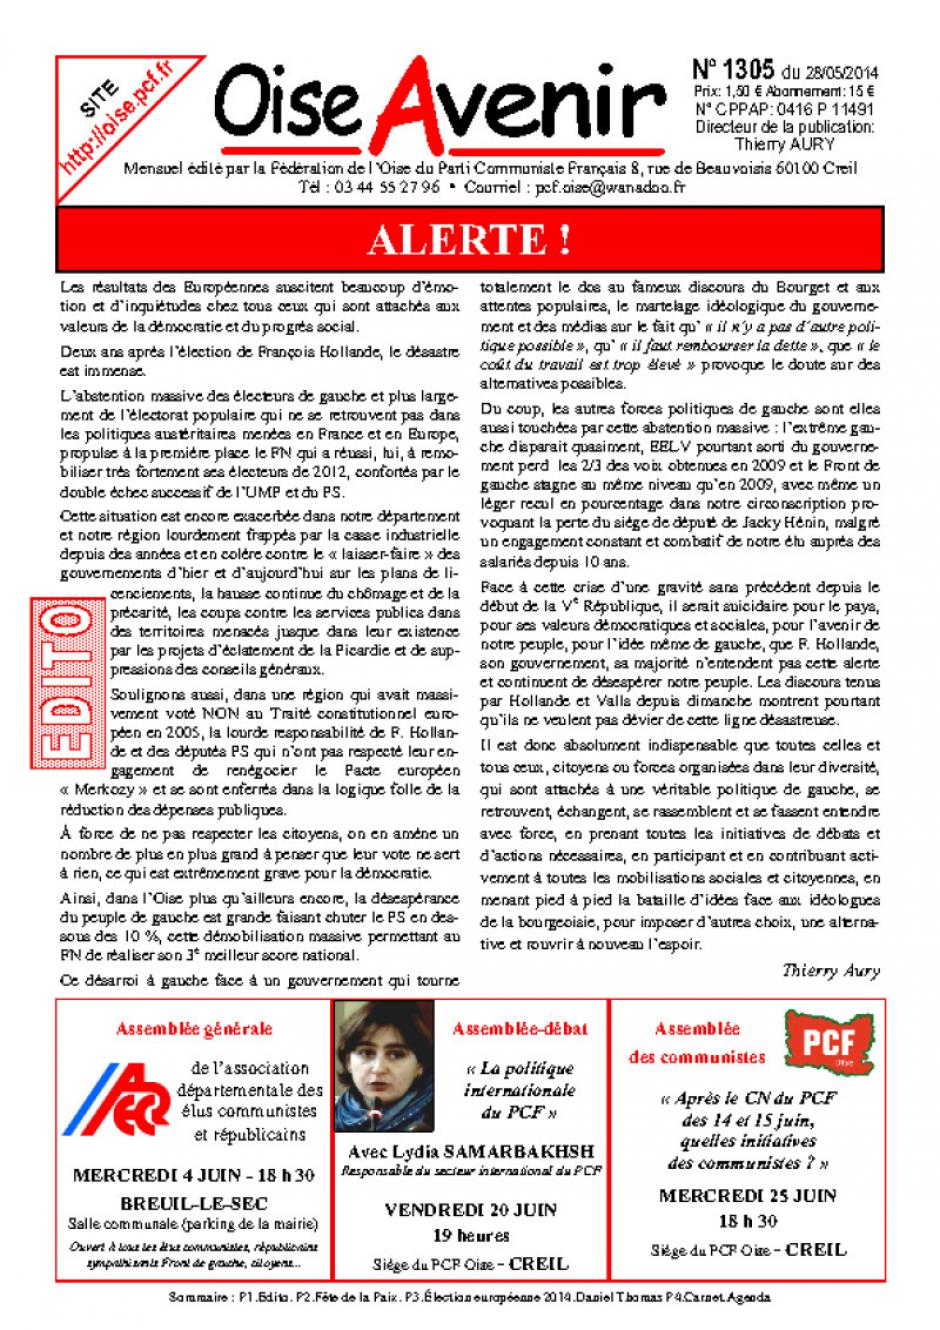 Oise Avenir n° 1305 du 28 mai 2014